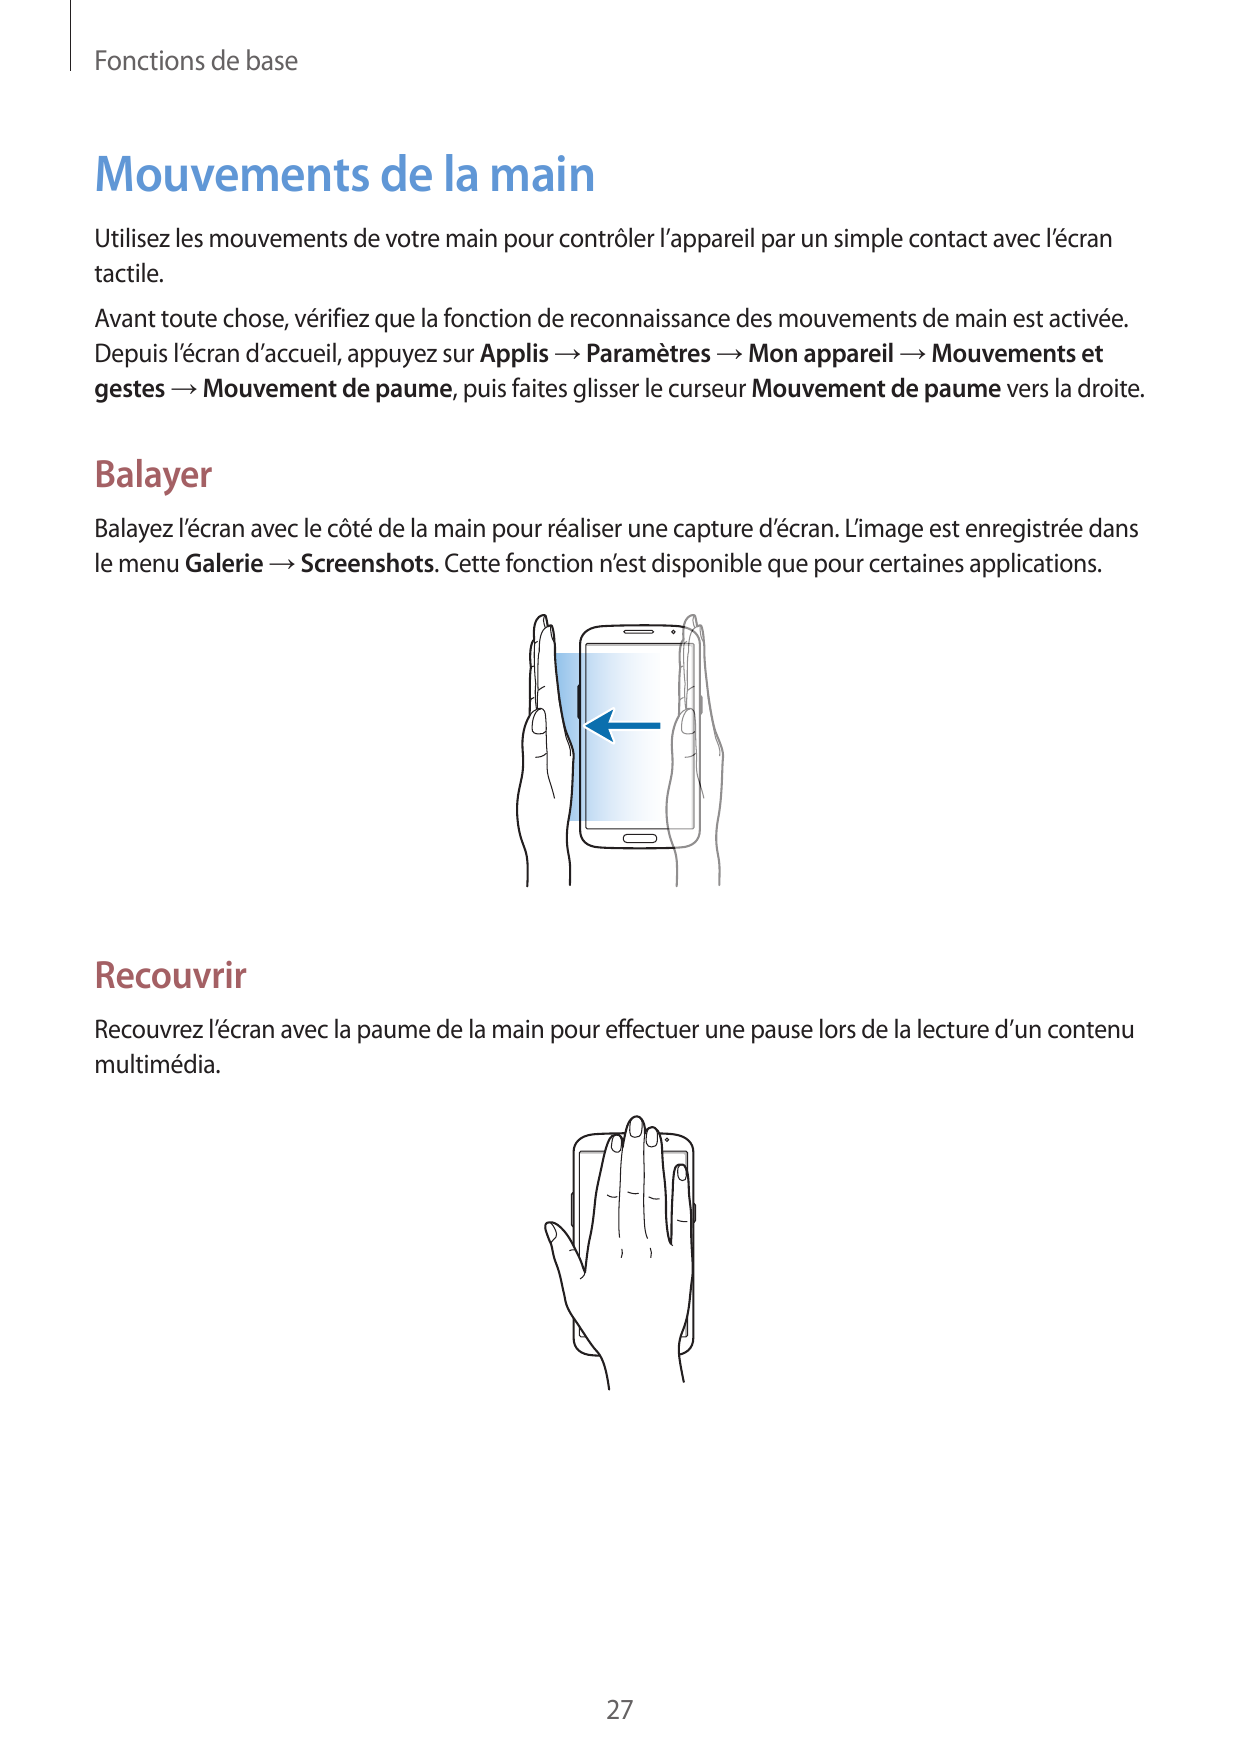 Fonctions de baseMouvements de la mainUtilisez les mouvements de votre main pour contrôler l’appareil par un simple contact avec